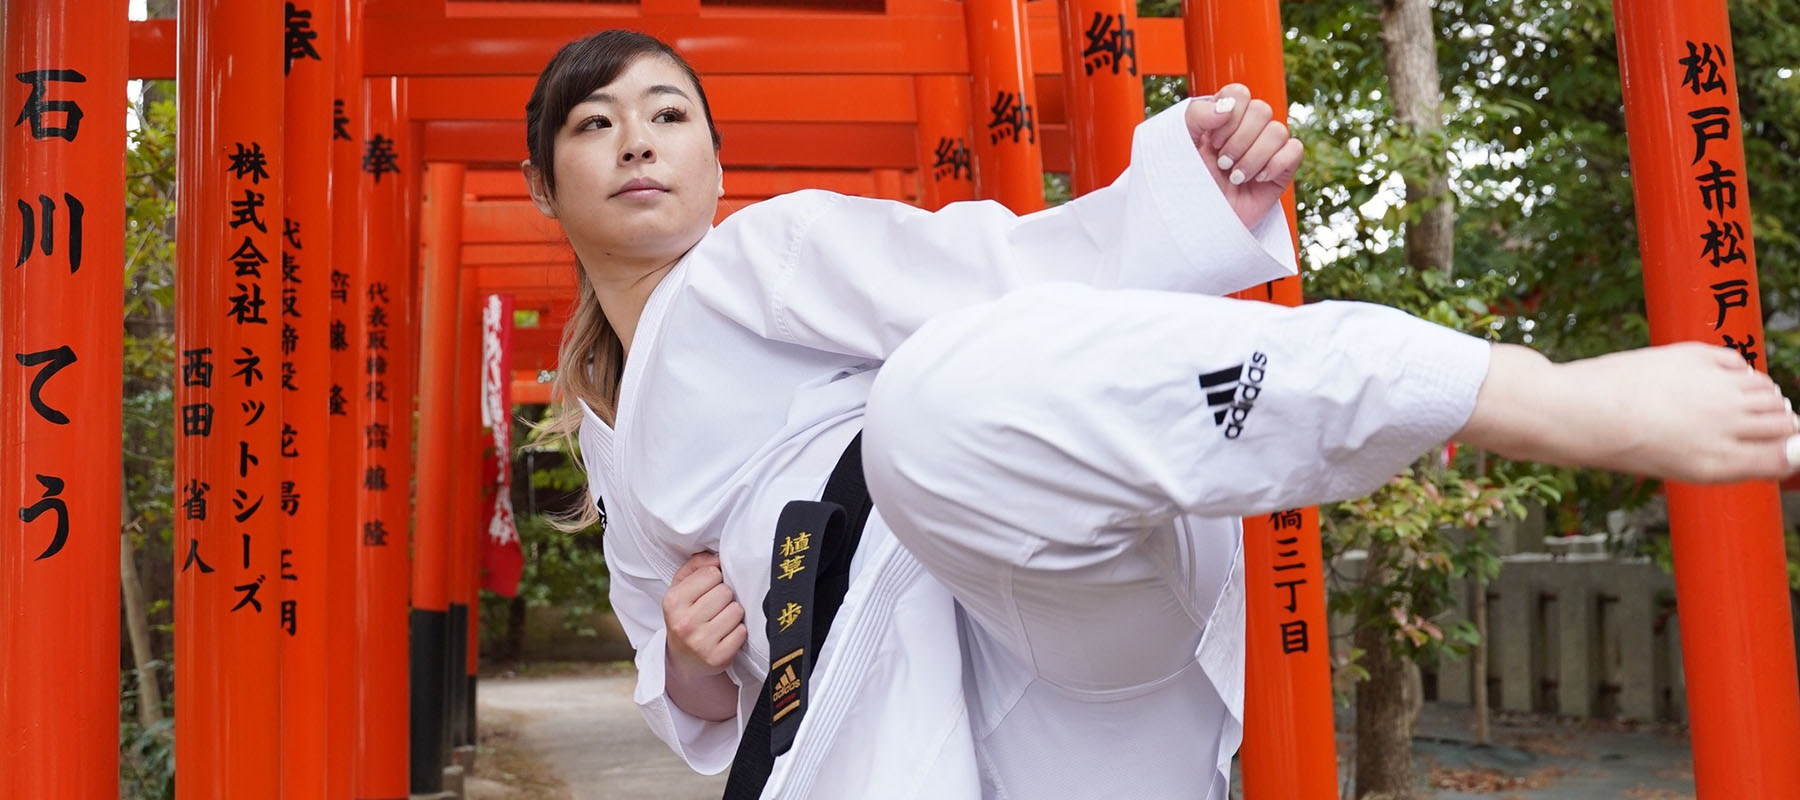 Consejos para elegir el uniforme de Karate | Blog MARXIAL